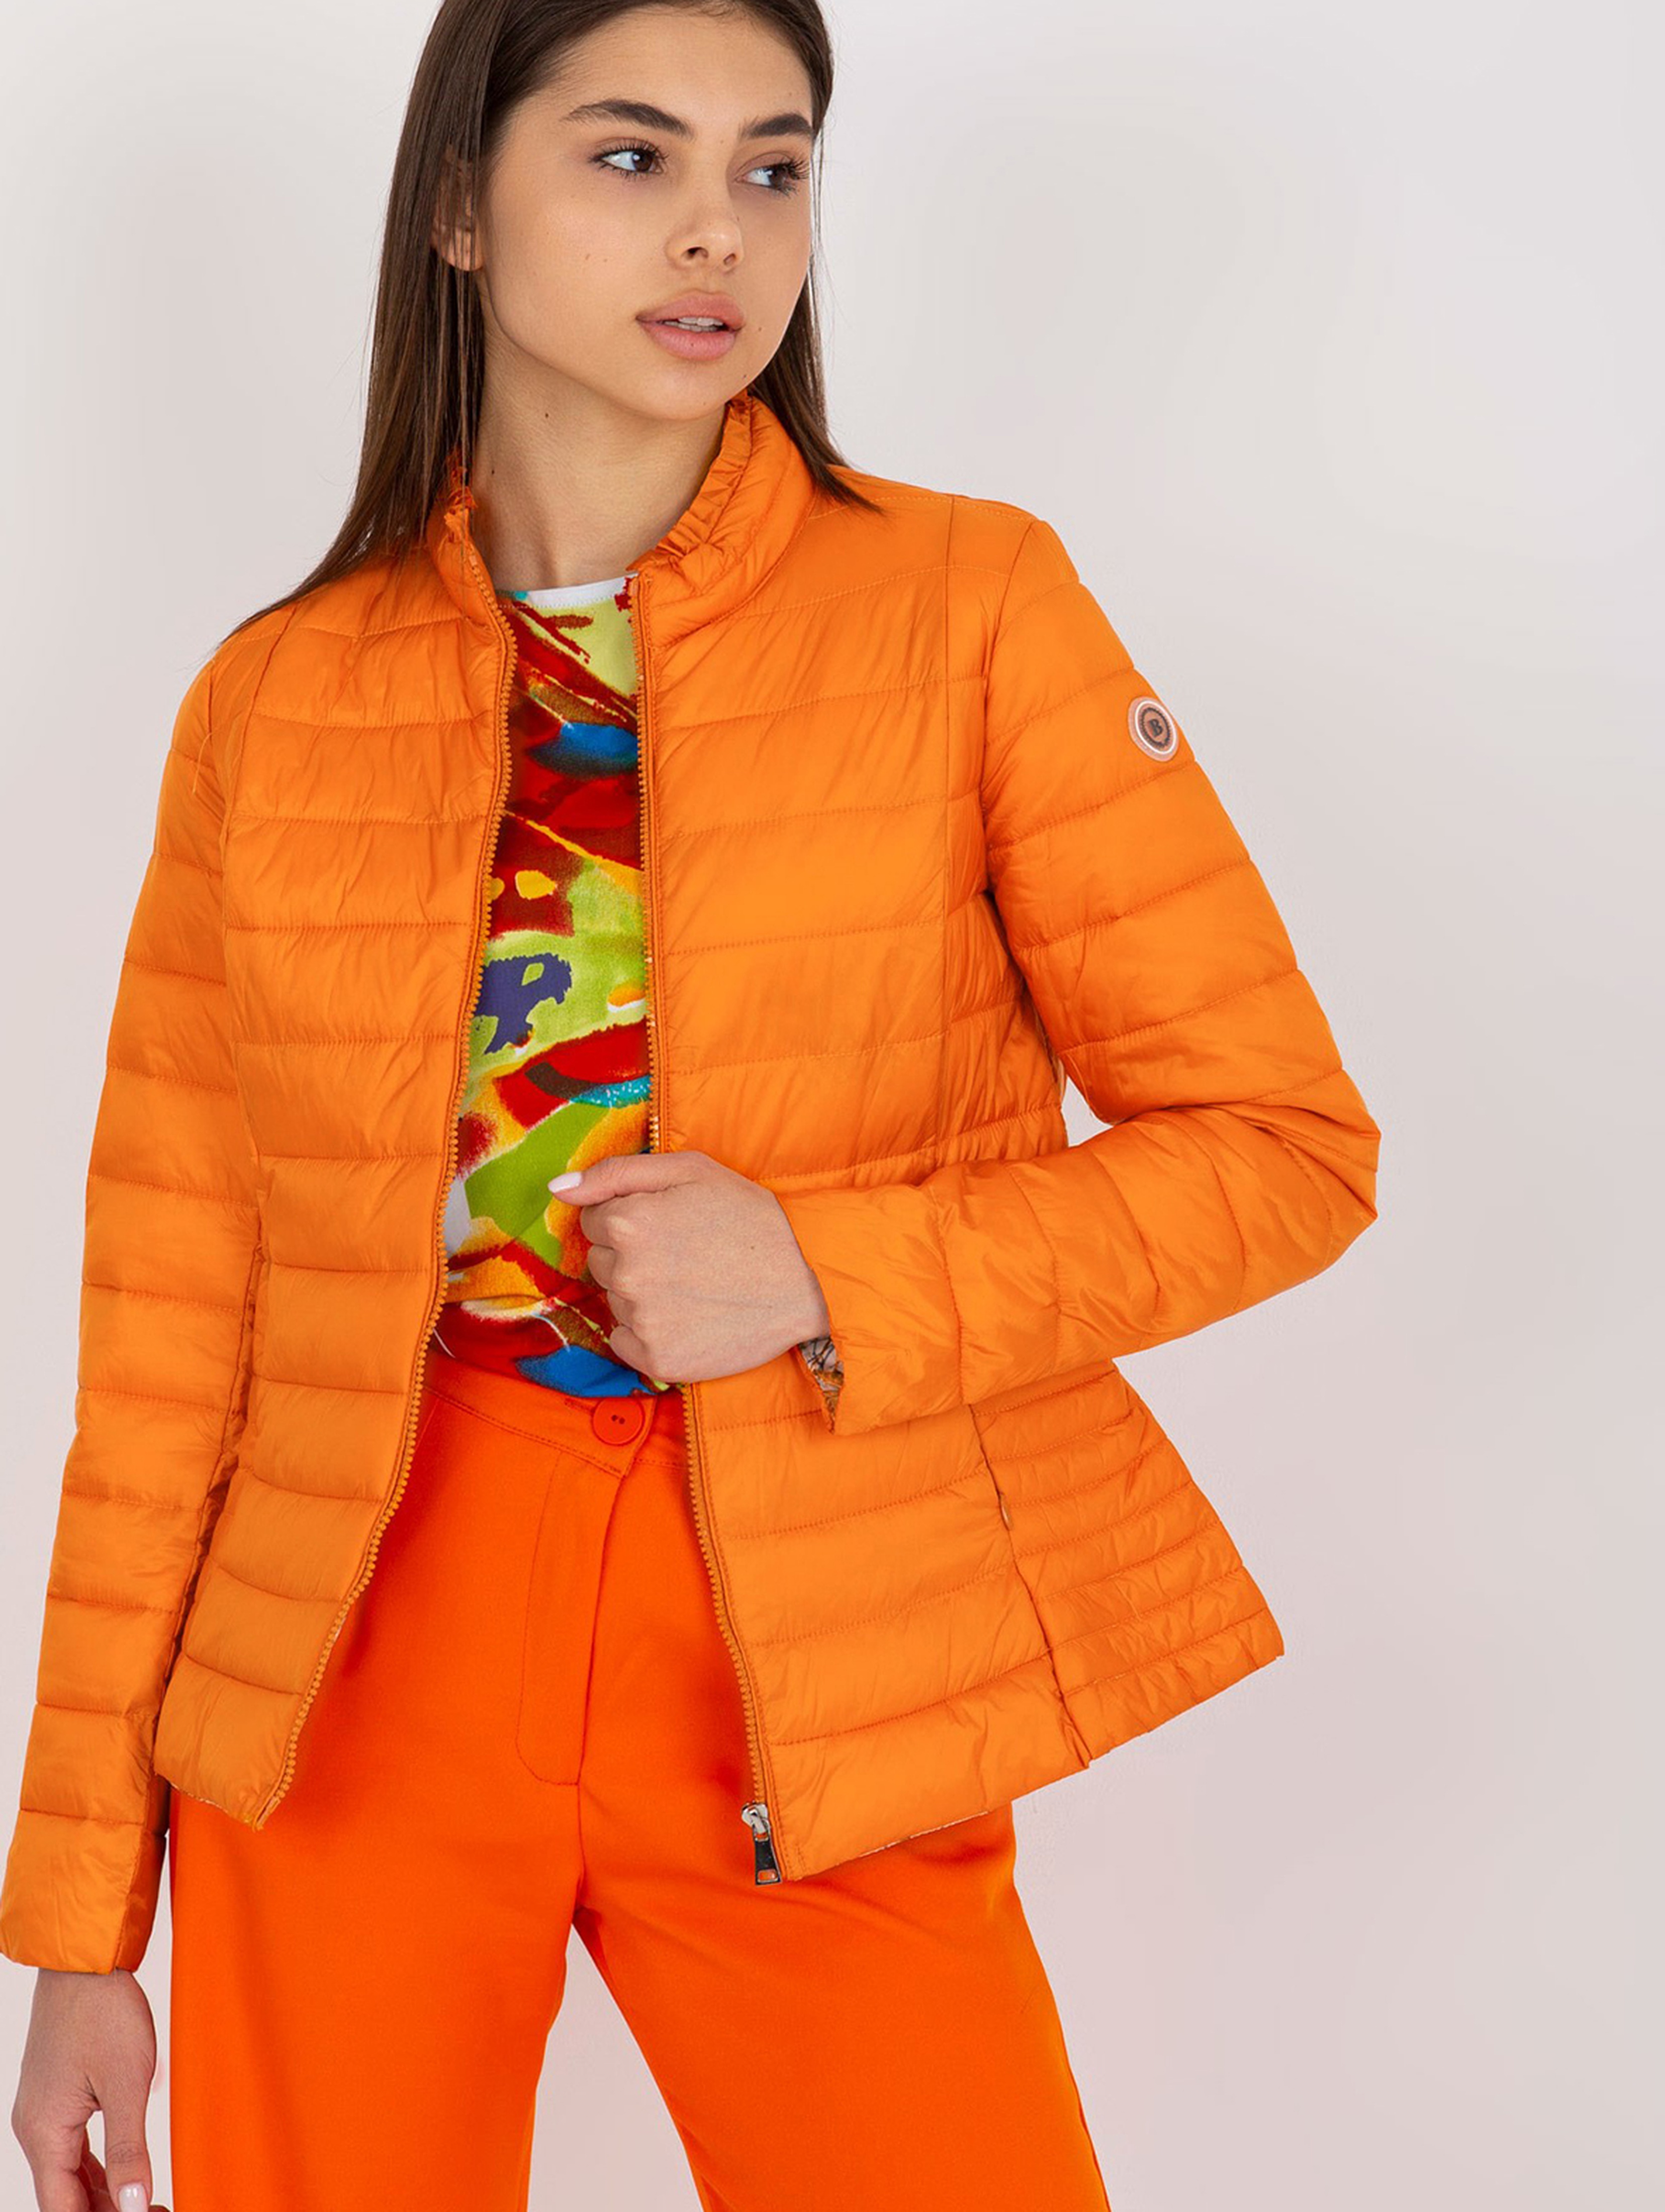 Pomarańczowa kurtka pikowana bez kaptura Daphne